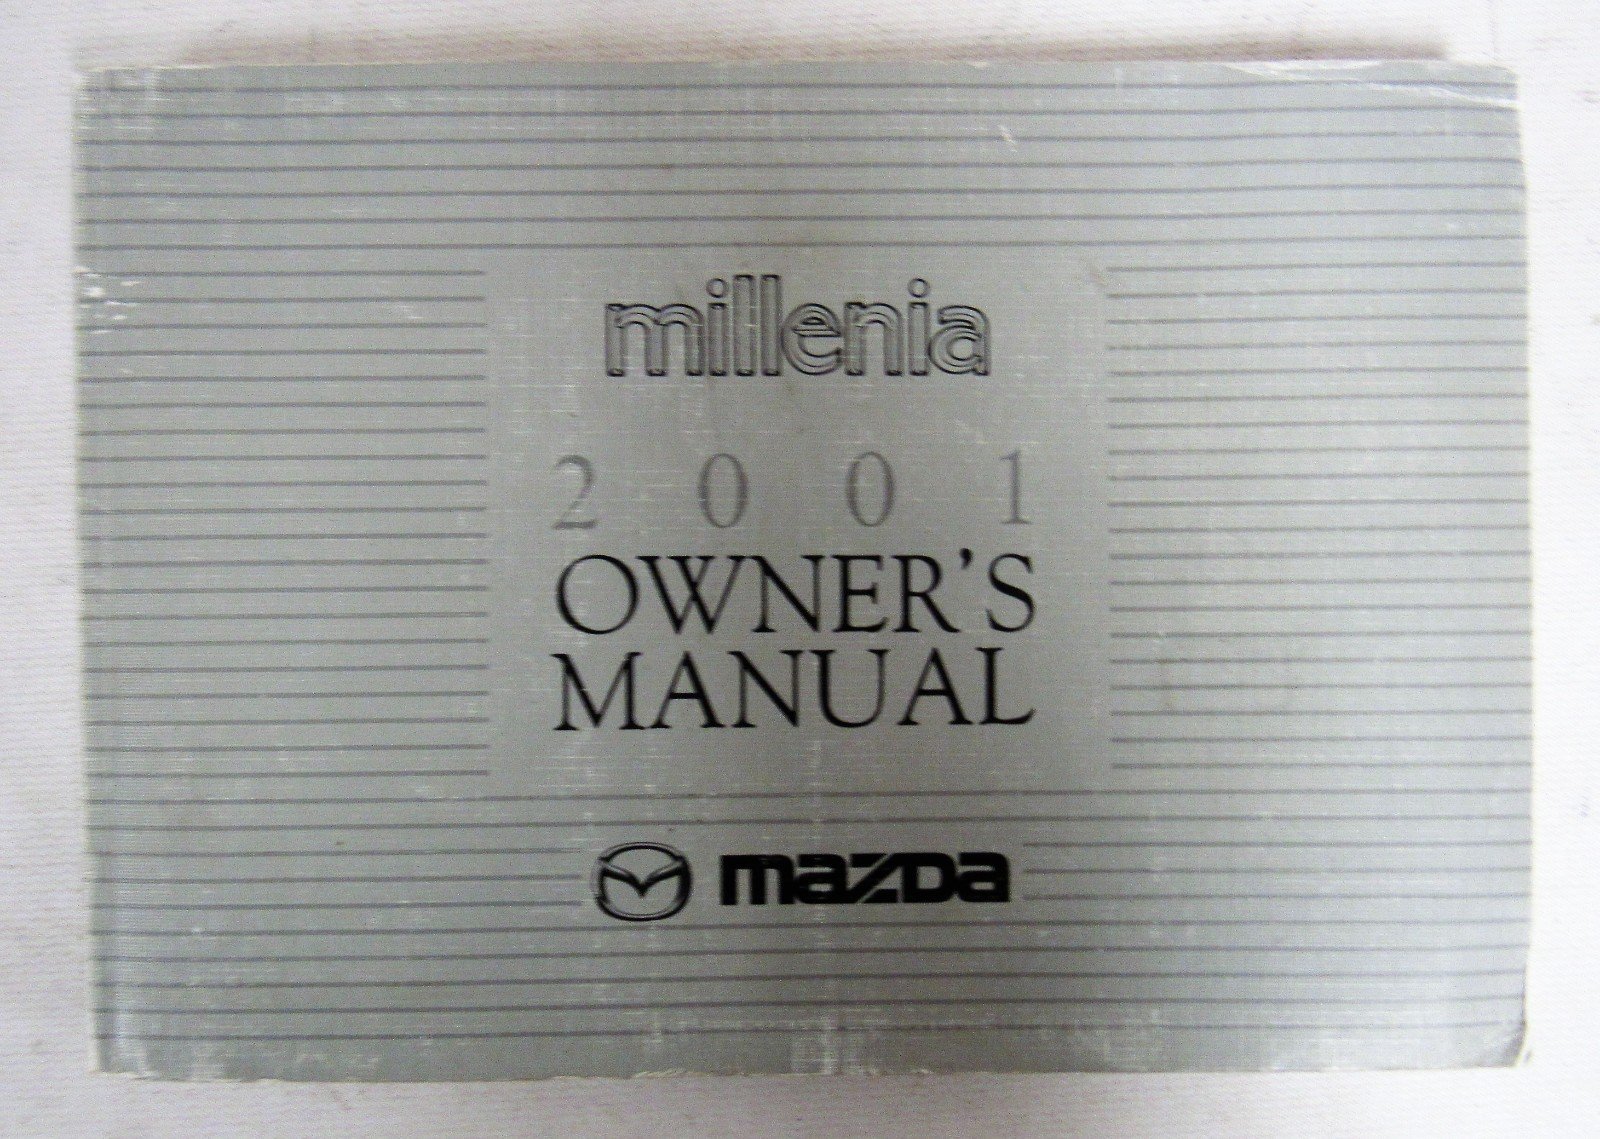 2001 Mazda Millenia Owners Manual [Paperback] Mazda - $48.99